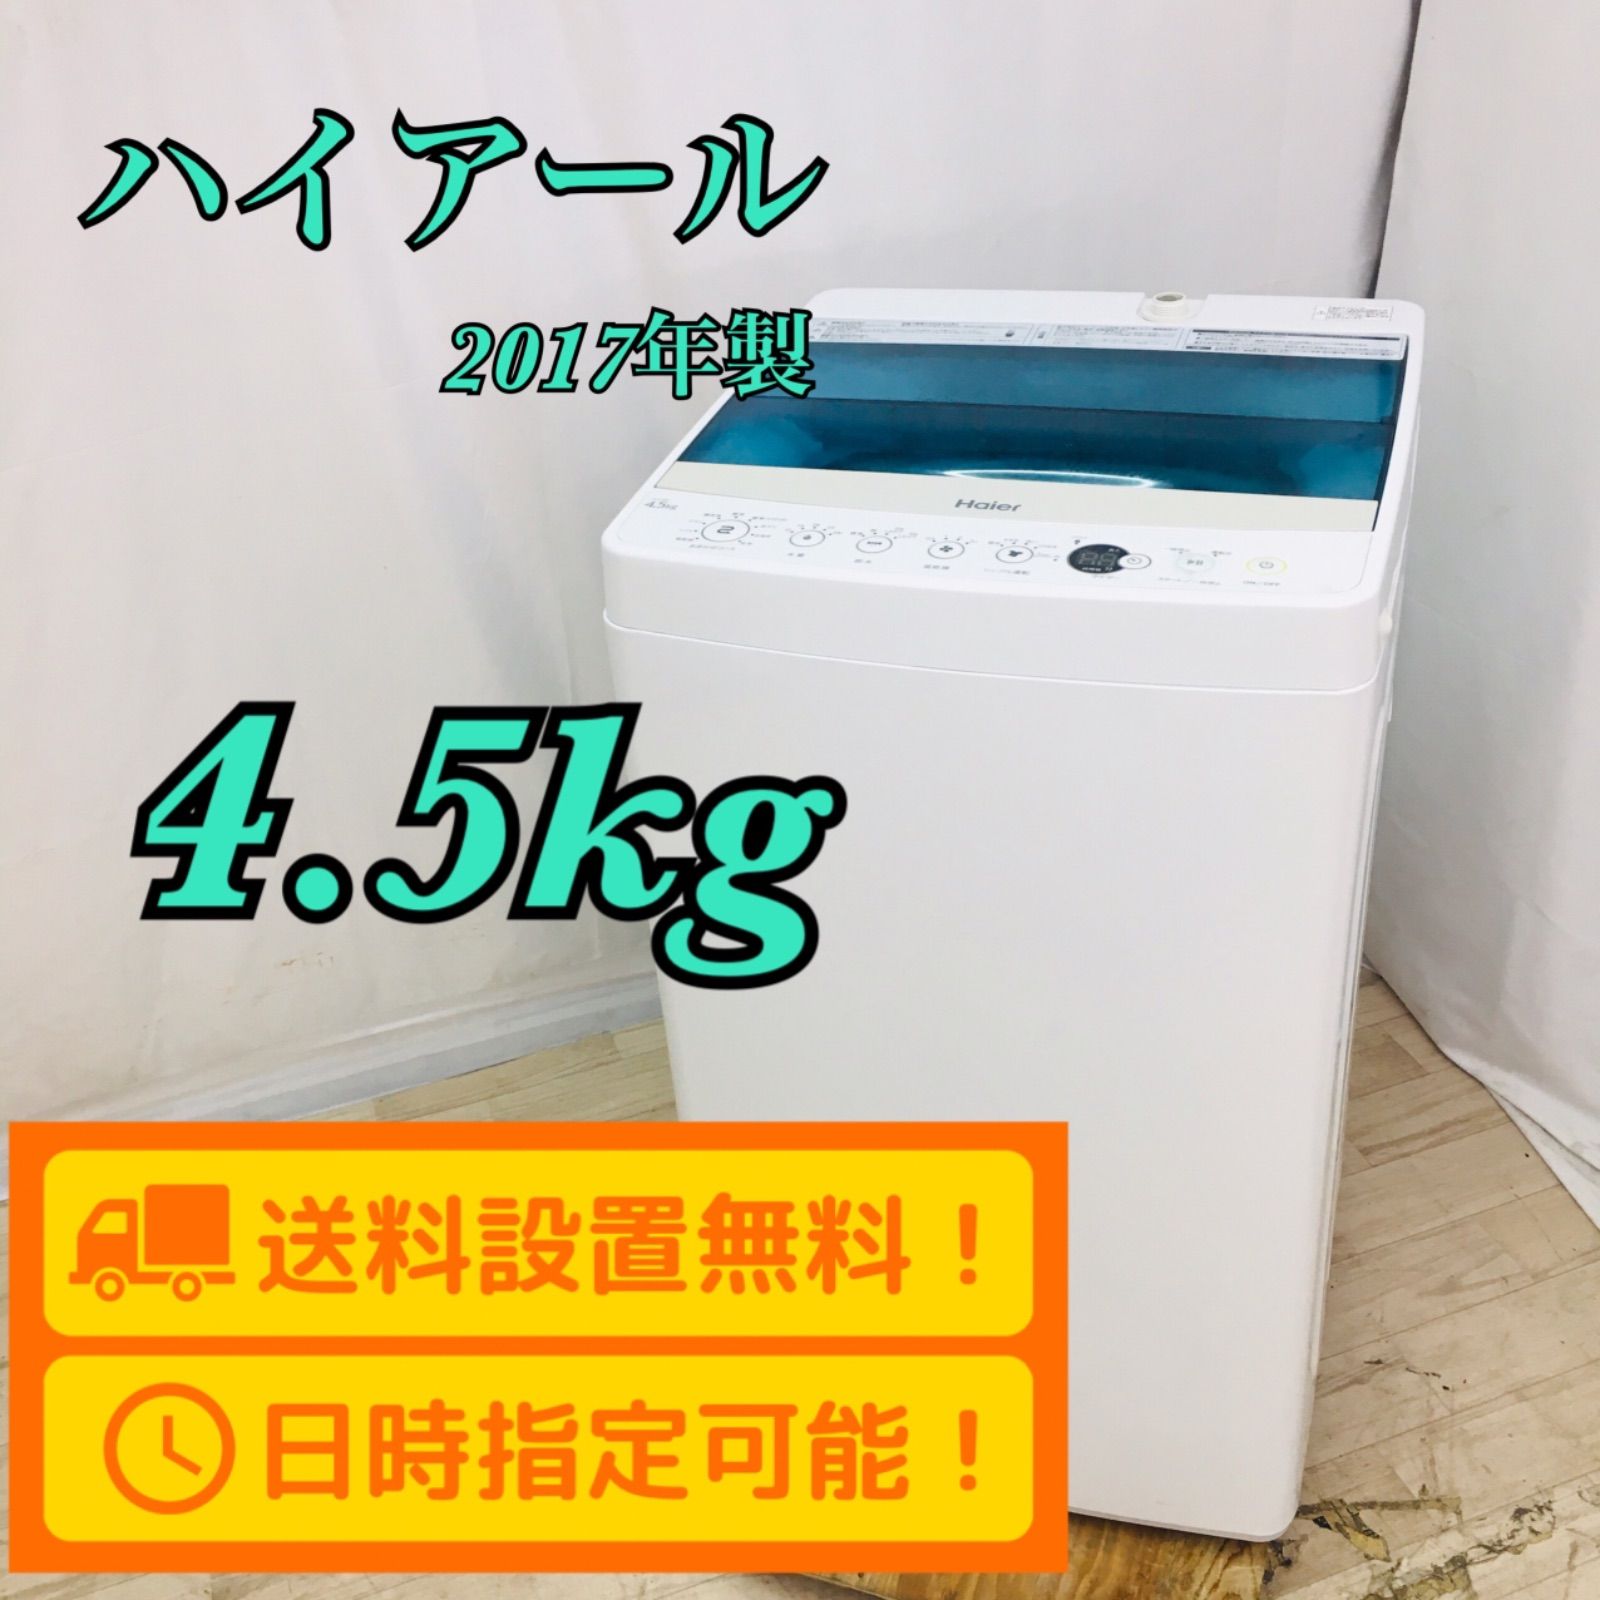 らしで 洗濯機 ハイアール Haier 4.5kg 一人暮らし uji7J-m89350500744 かかります 